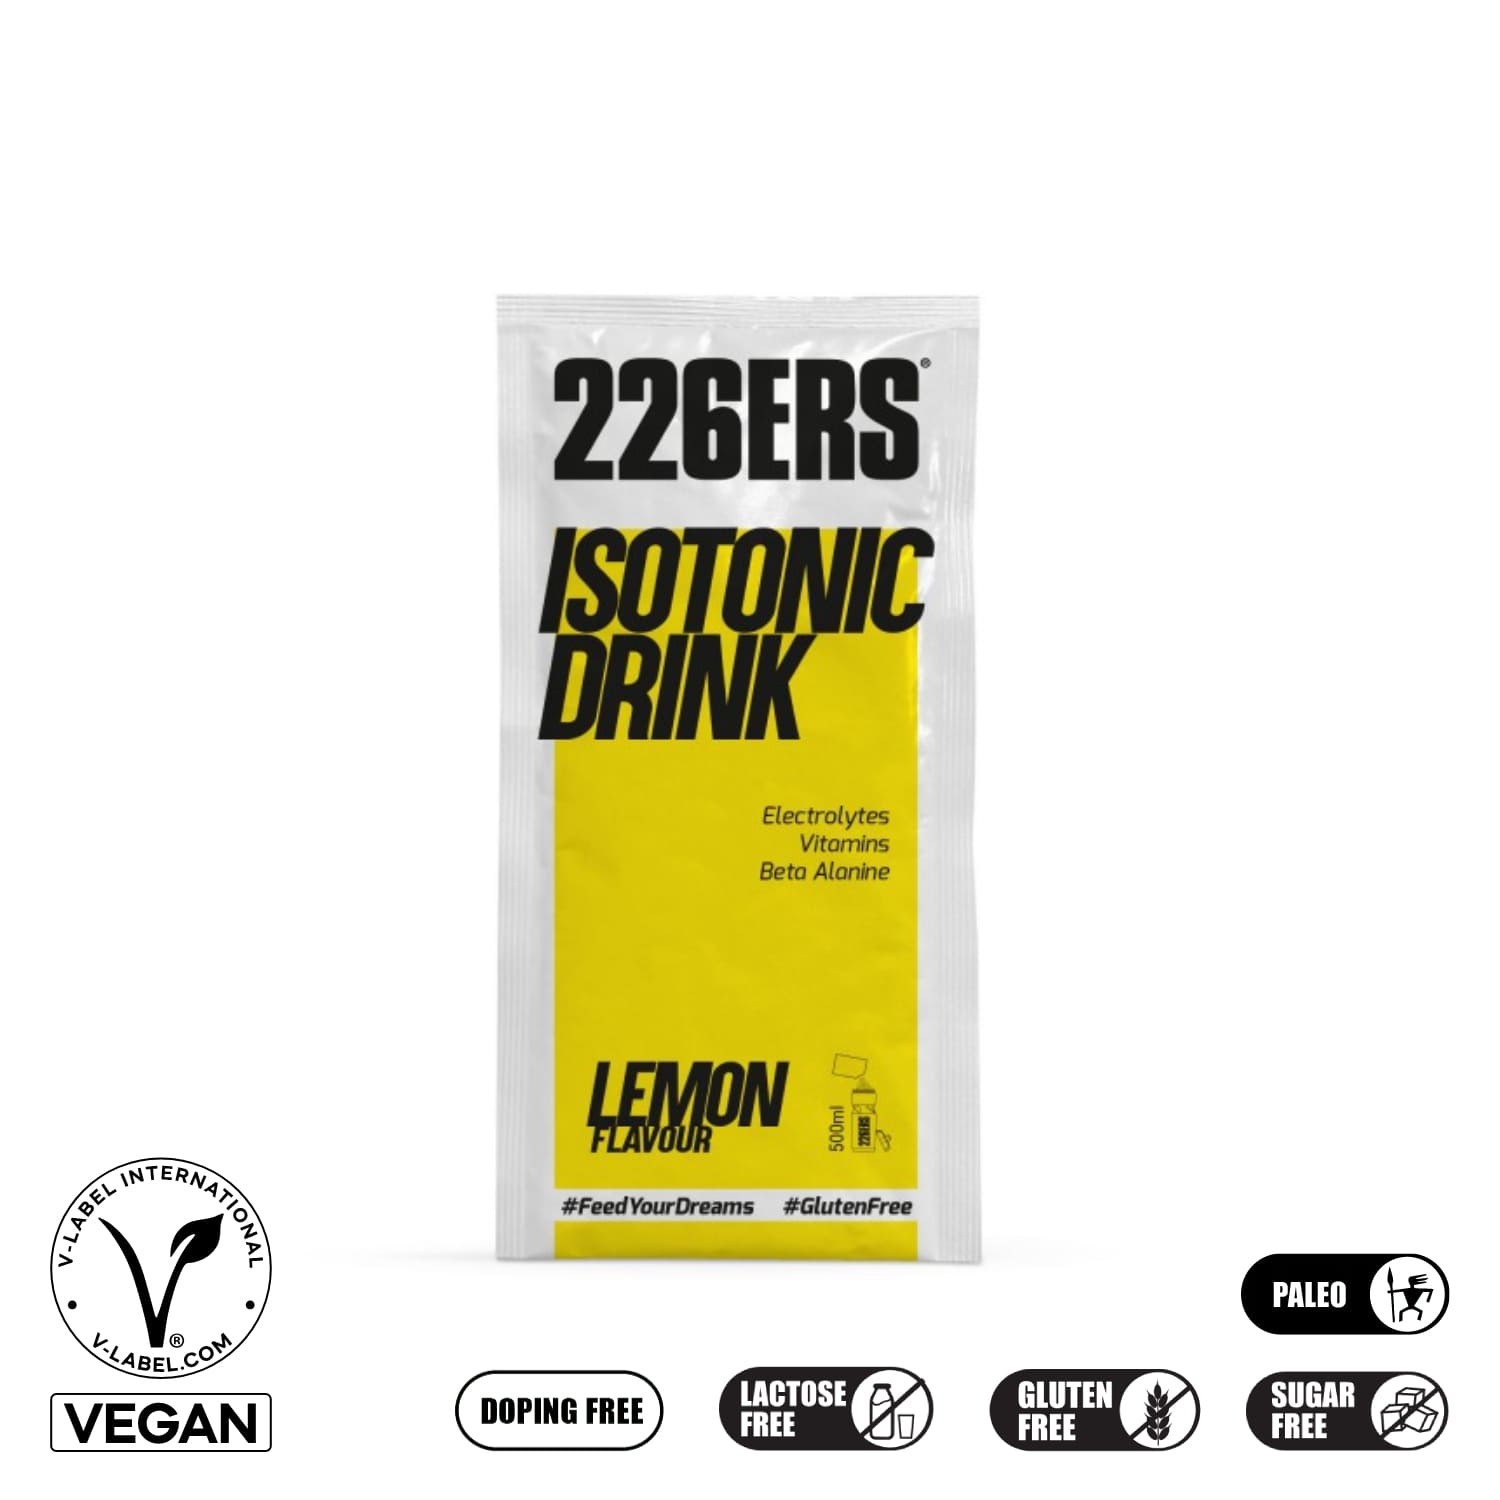 226ers_isotonic drink_lemon